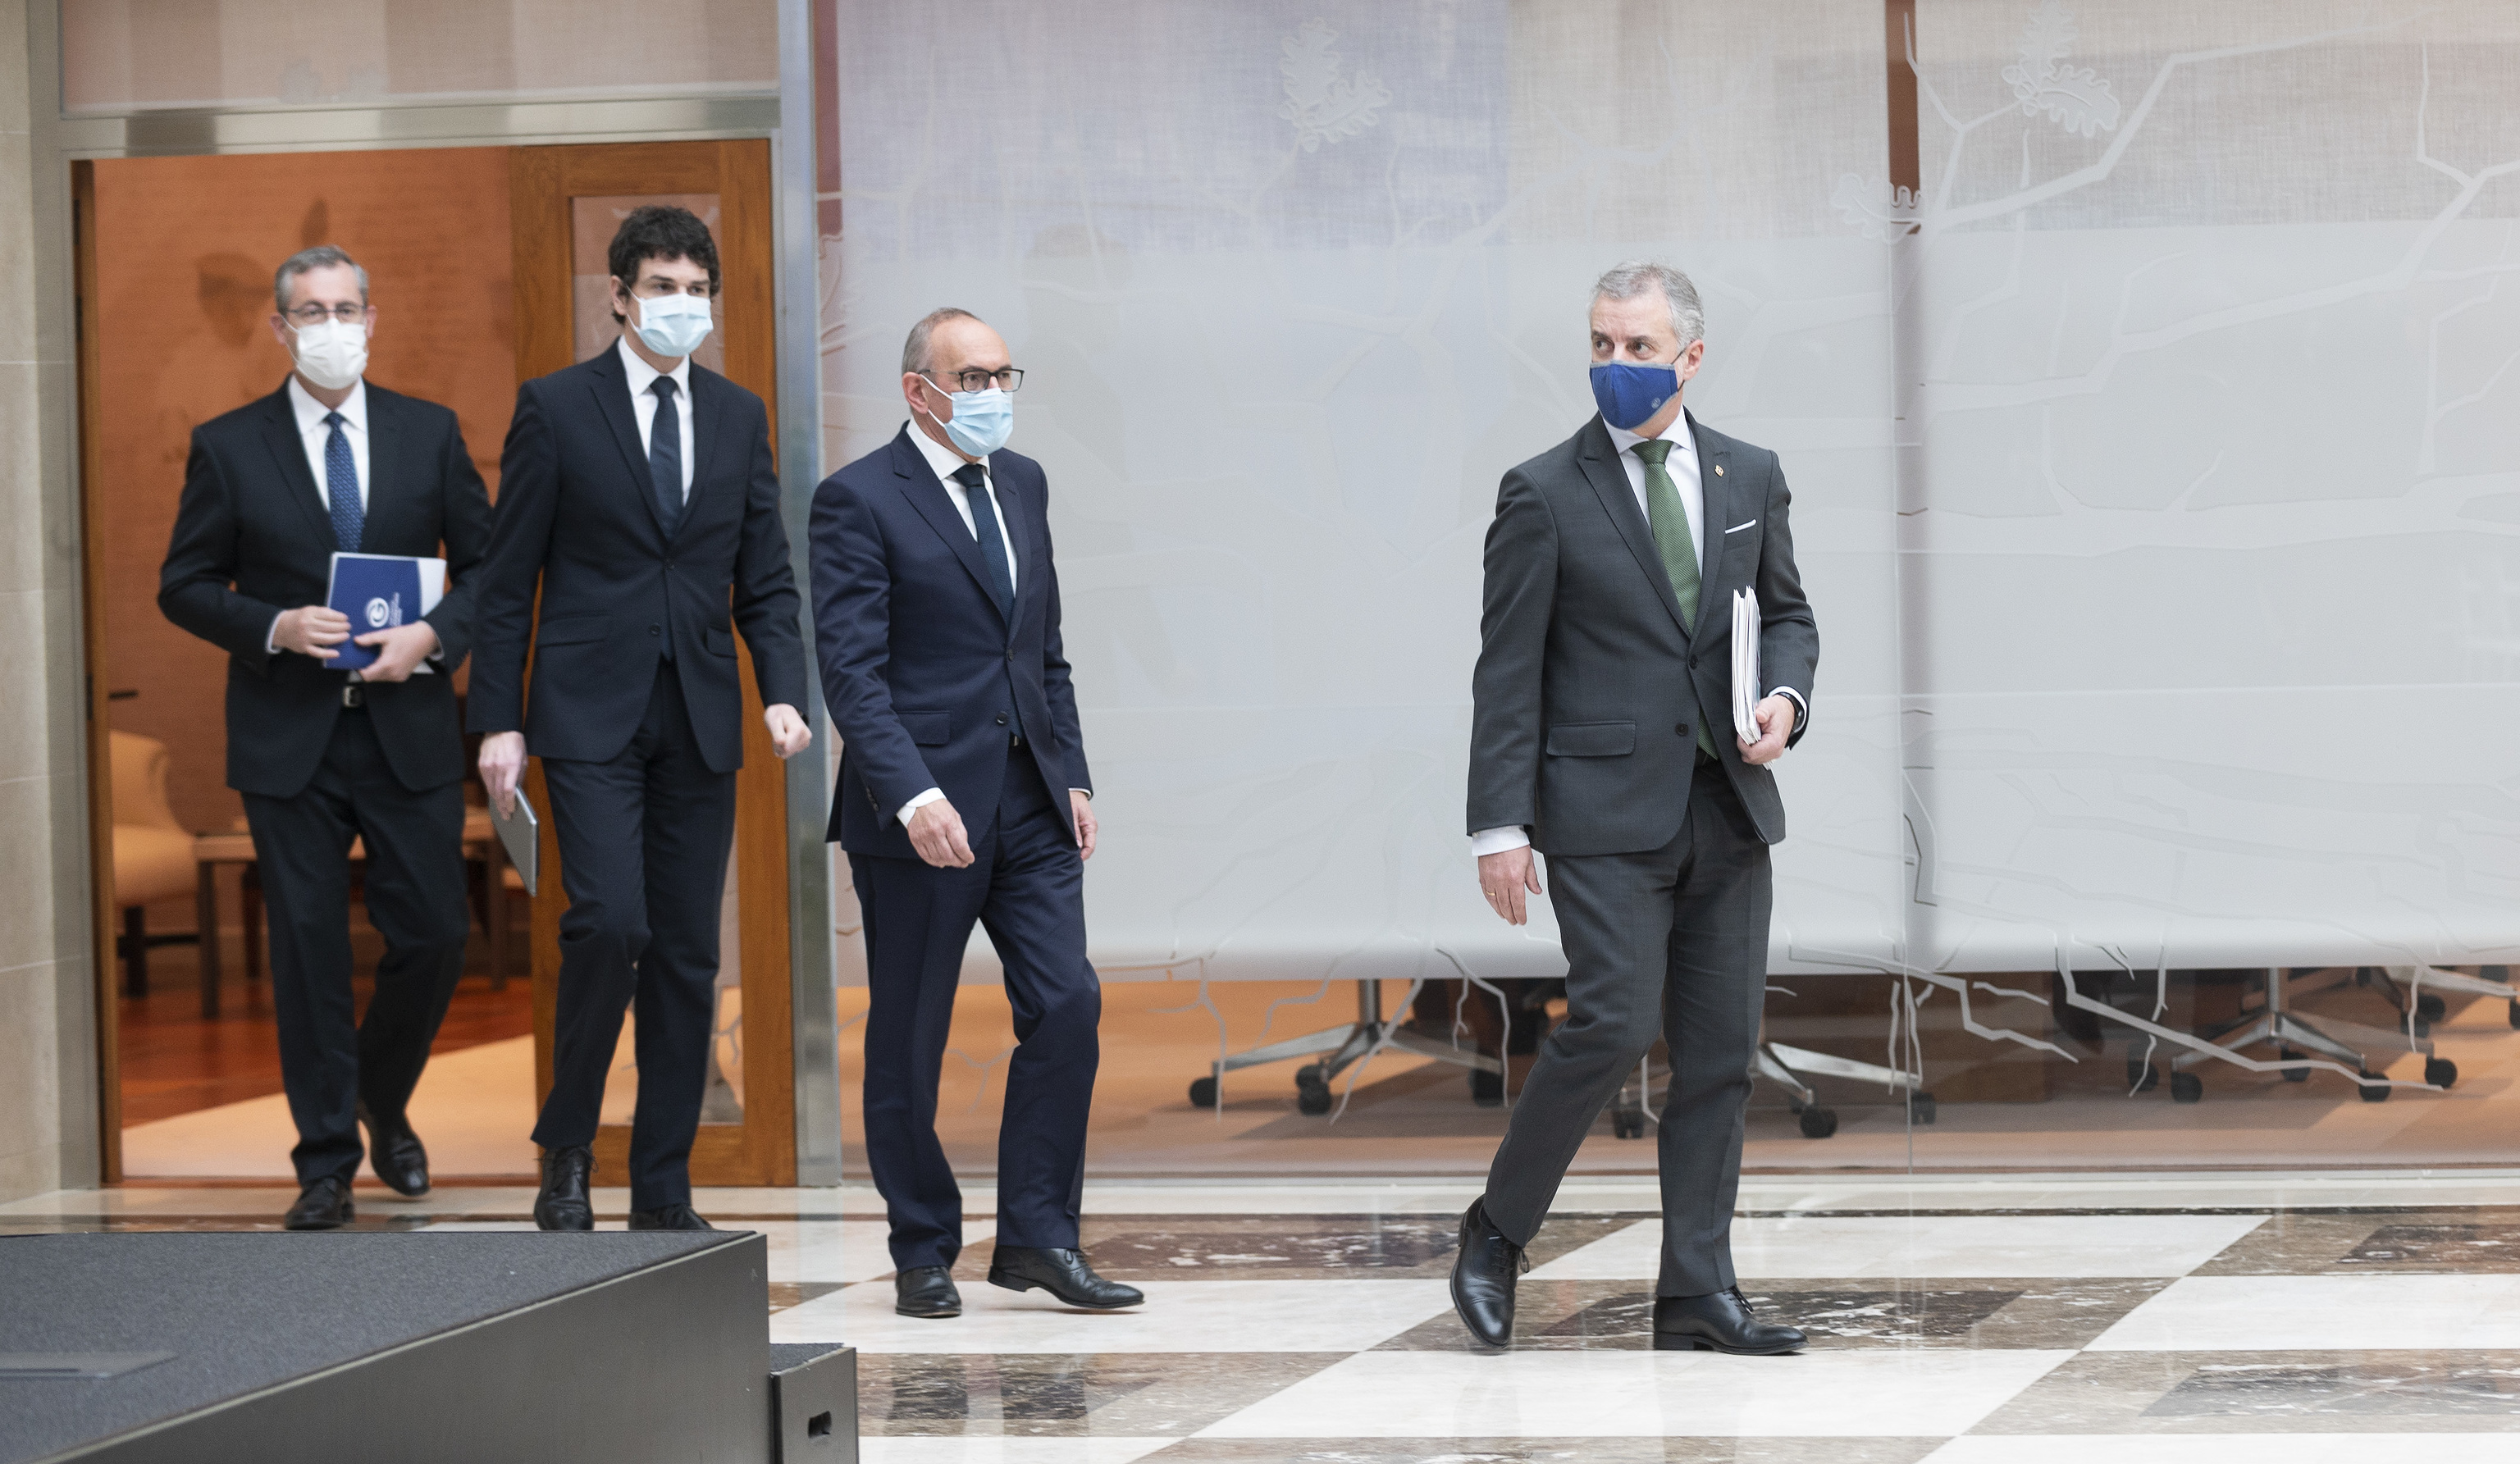 El lehendakari Urkullu camina por delante de los tres diputados generales antes de su comparecencia conjunta de Lehendakaritza.